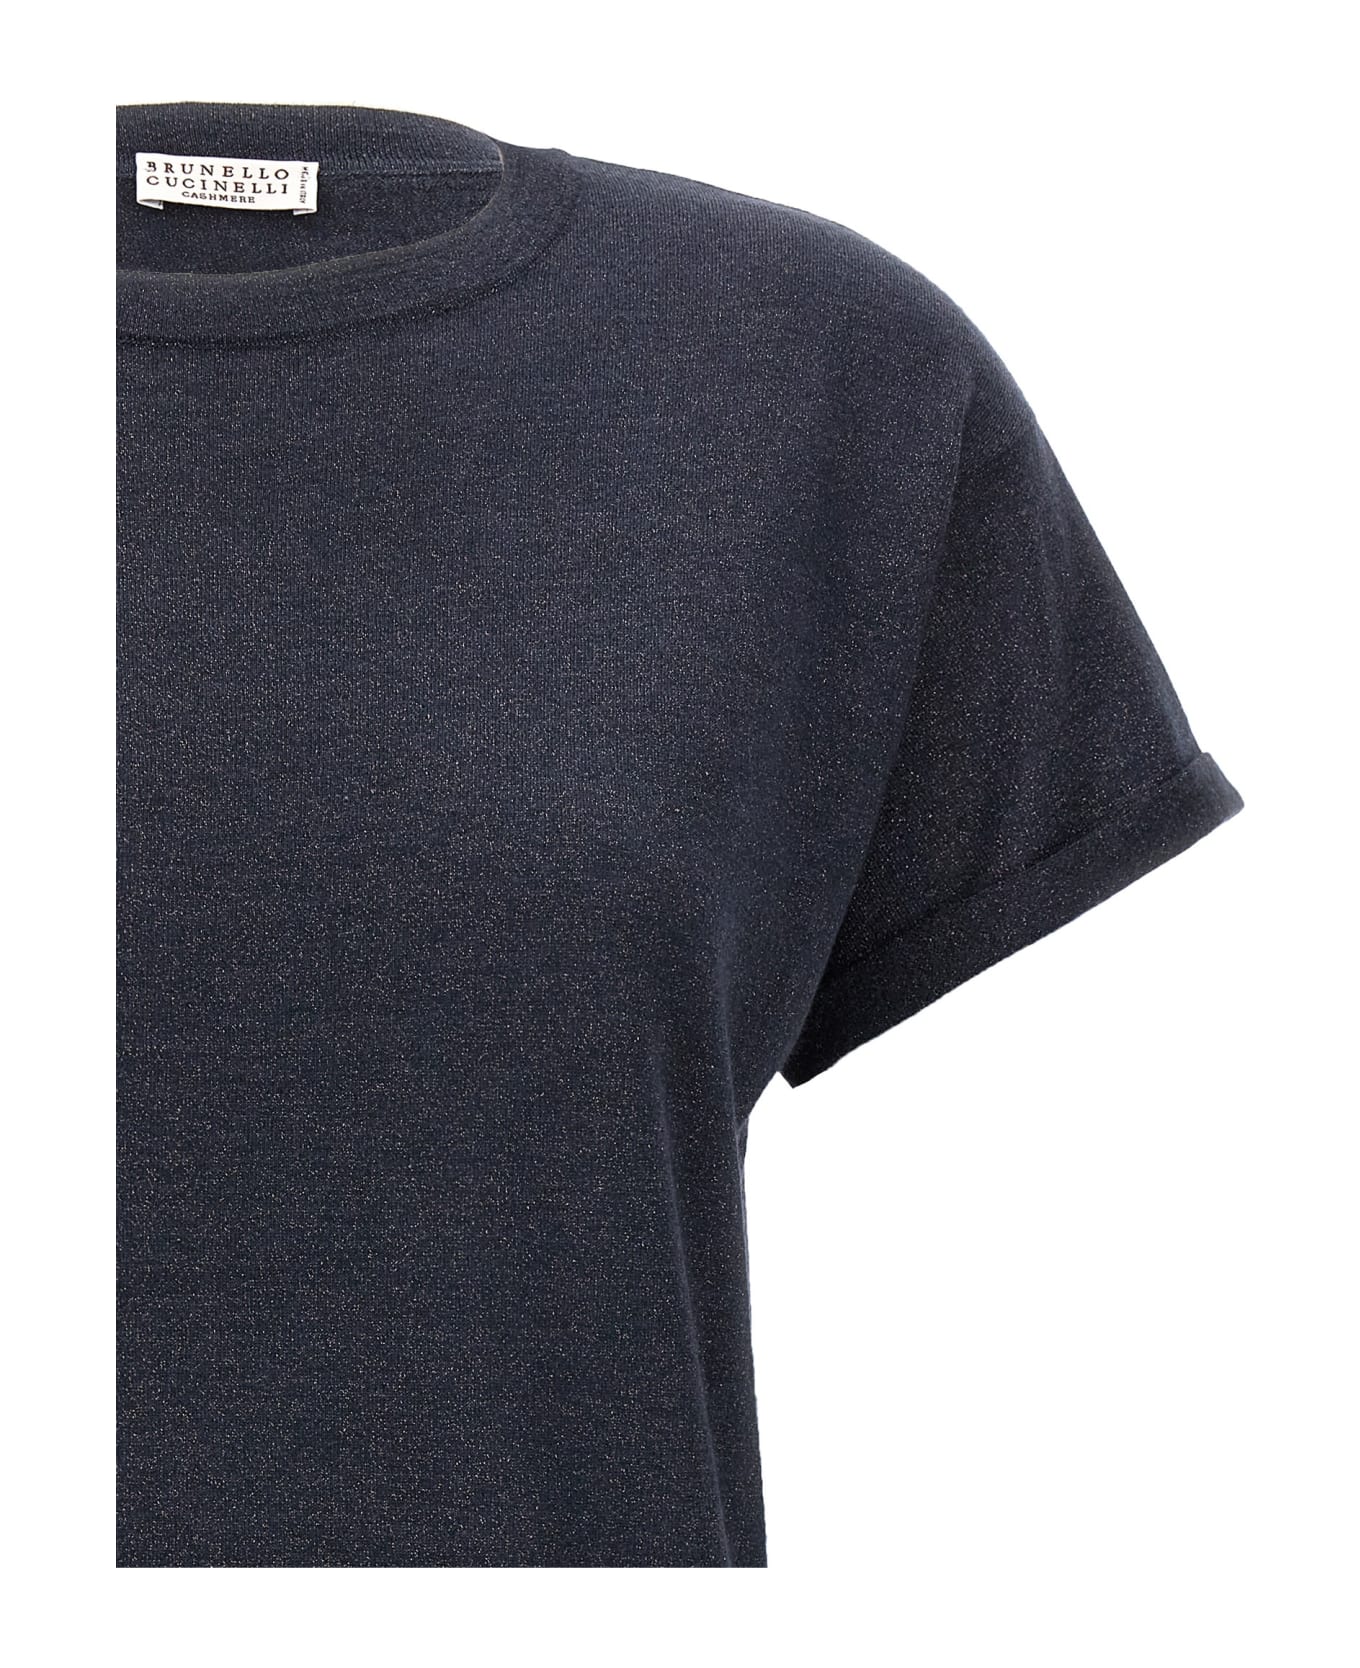 Brunello Cucinelli Lurex Sweater - Blue Tシャツ